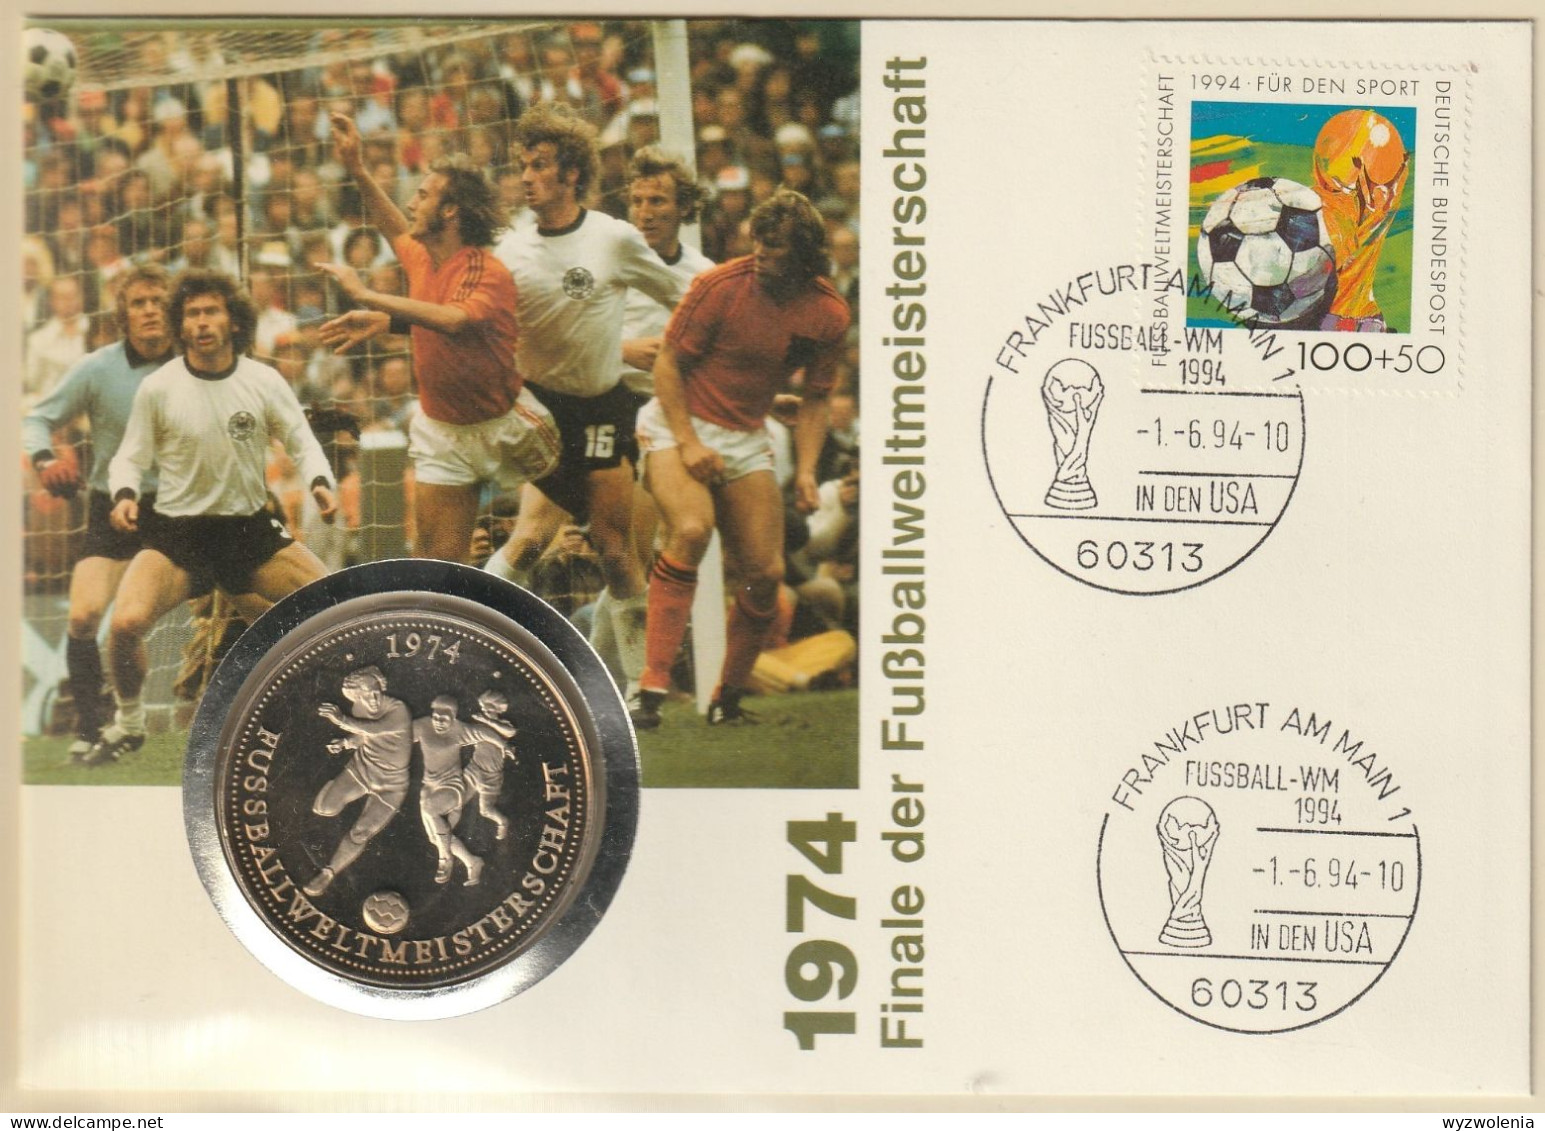 A 760) BRD 1994 Mi# 1718 SoSt Frankfurt Fußball-WM In USA; Medaille Zeigt Gewinn Der WM 1974 - 1994 – USA